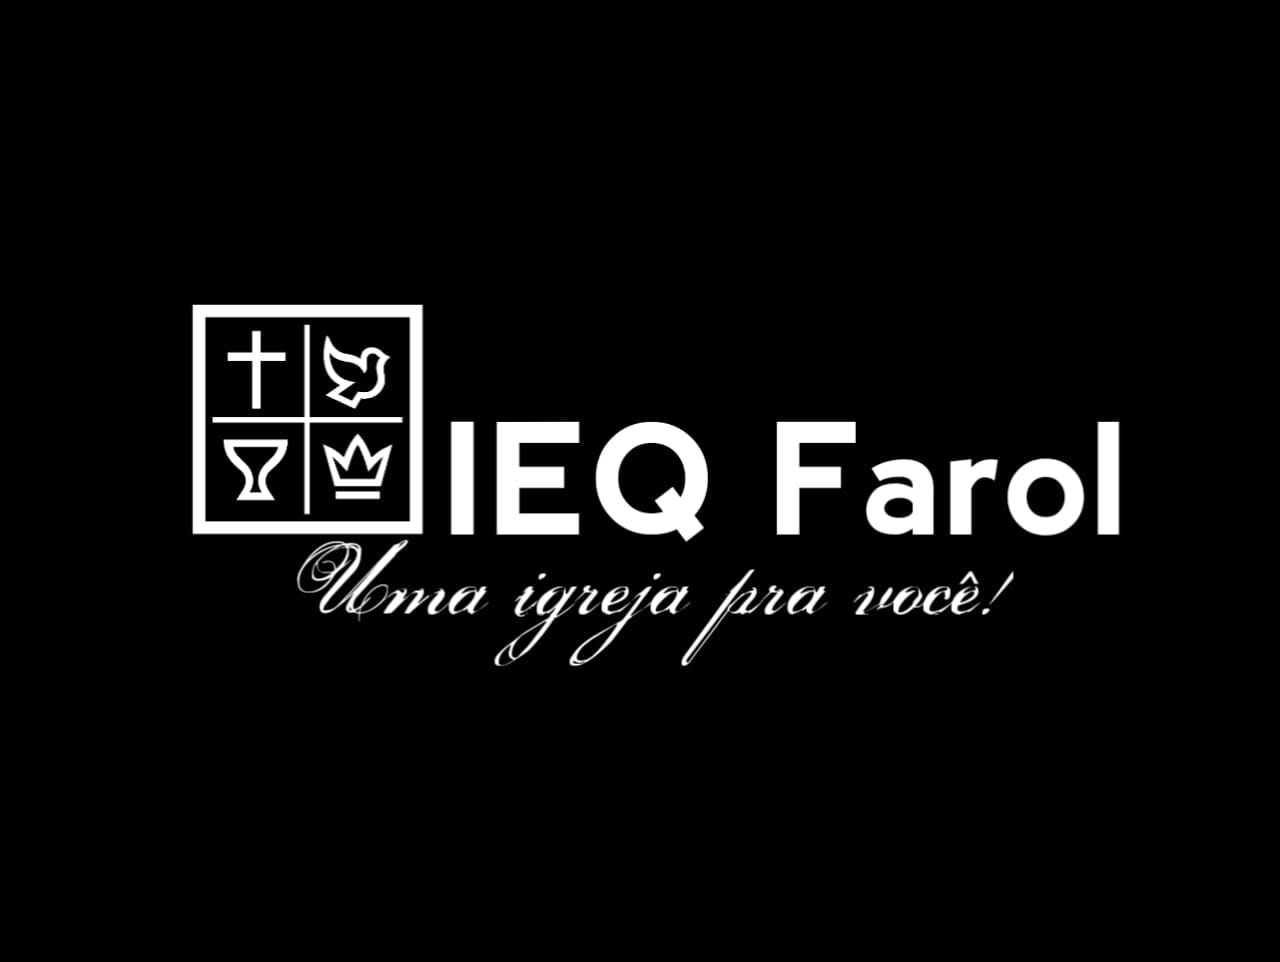 IEQ Farol